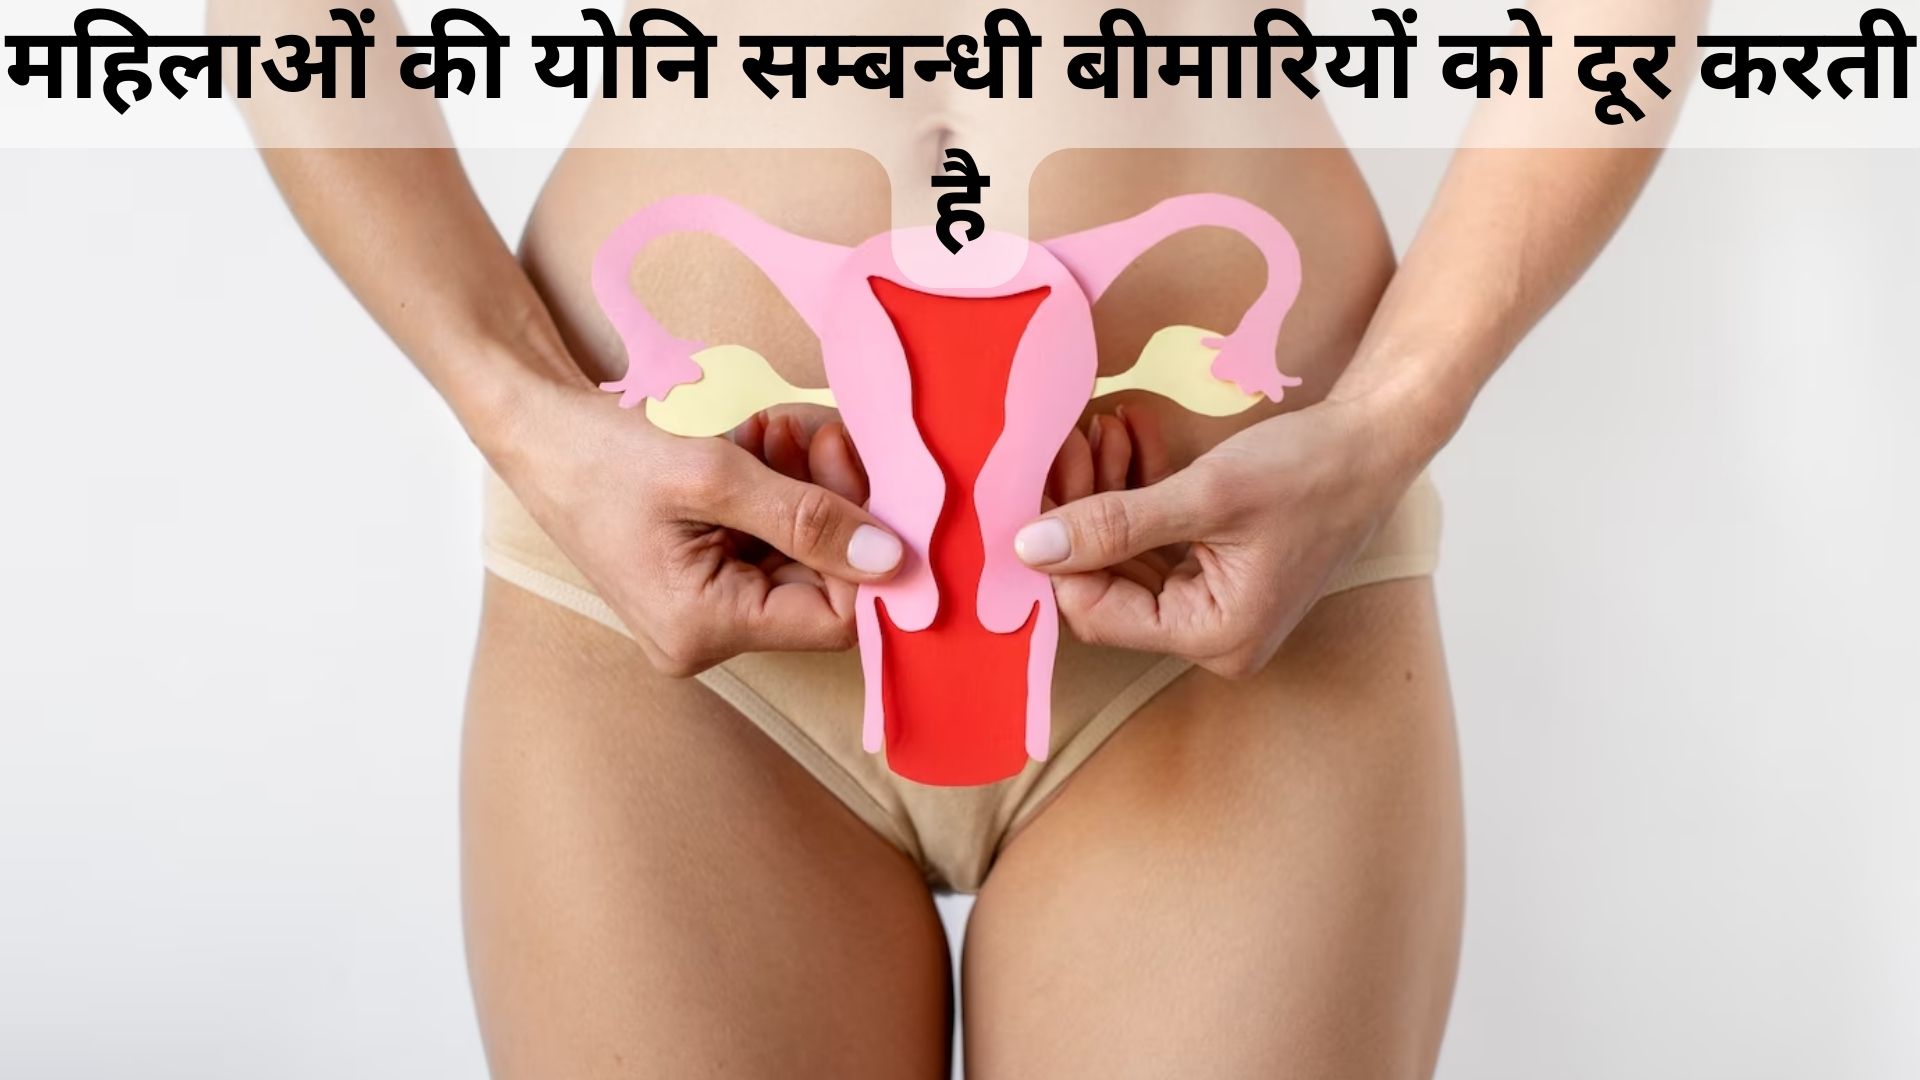 महिलाओं की योनि सम्बन्धी बीमारियों को दूर करती है